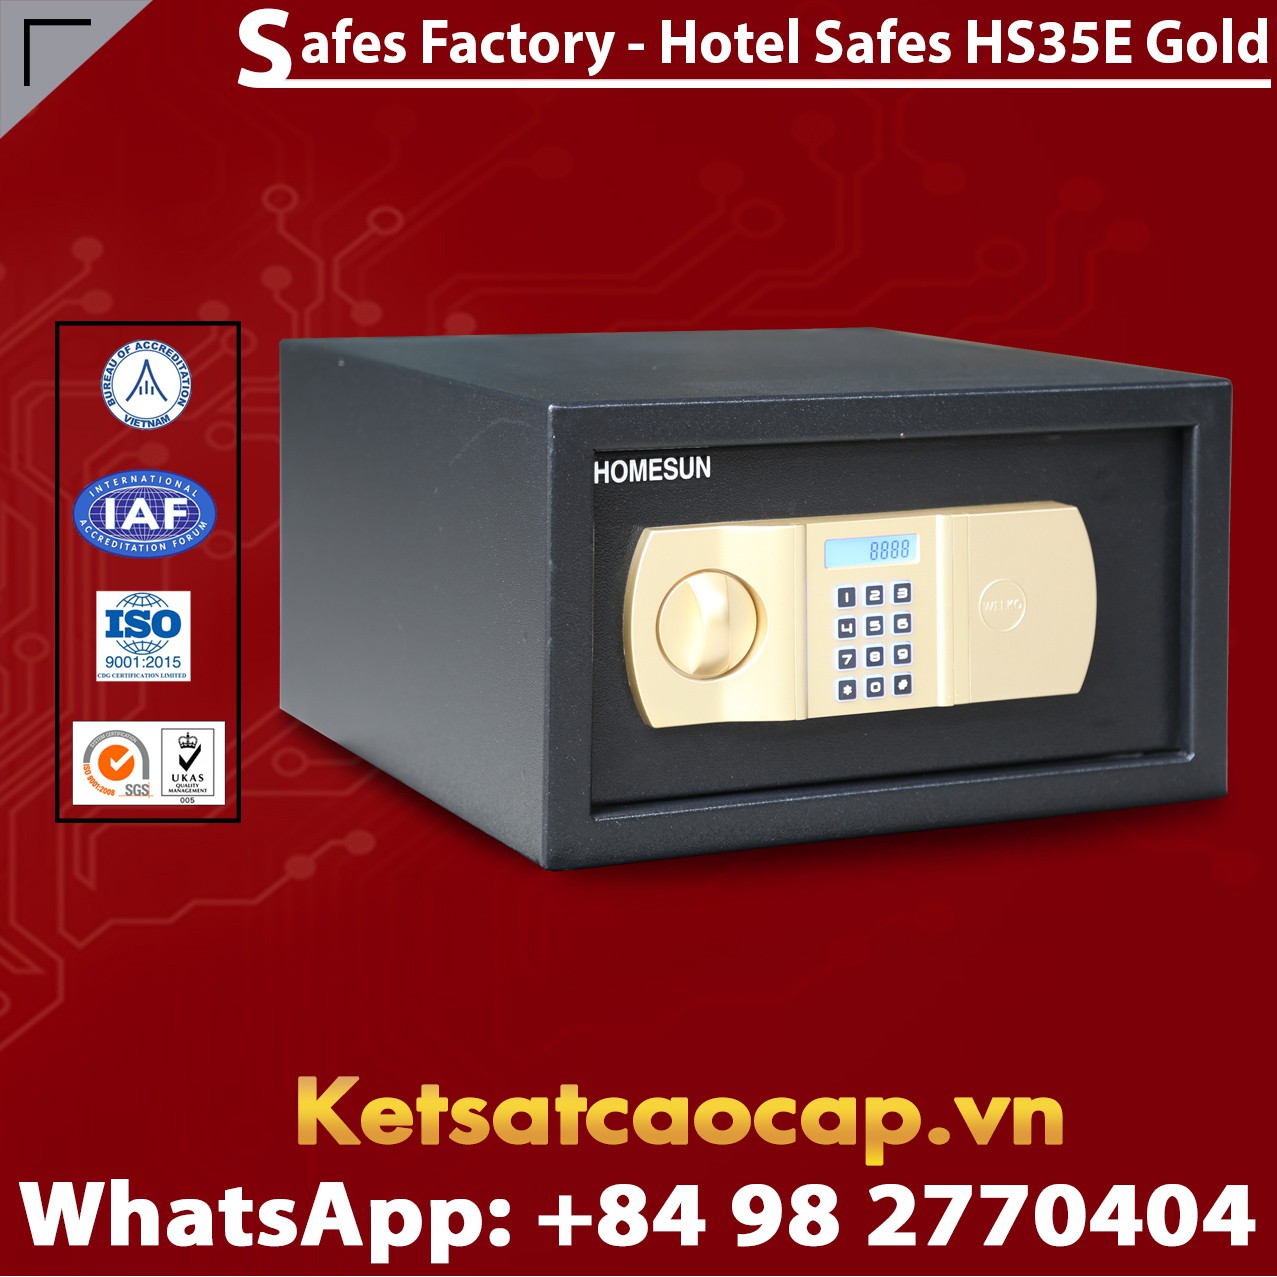 Két Sắt Khách Sạn Hotel Safes HOMESUN HS35 E Gold